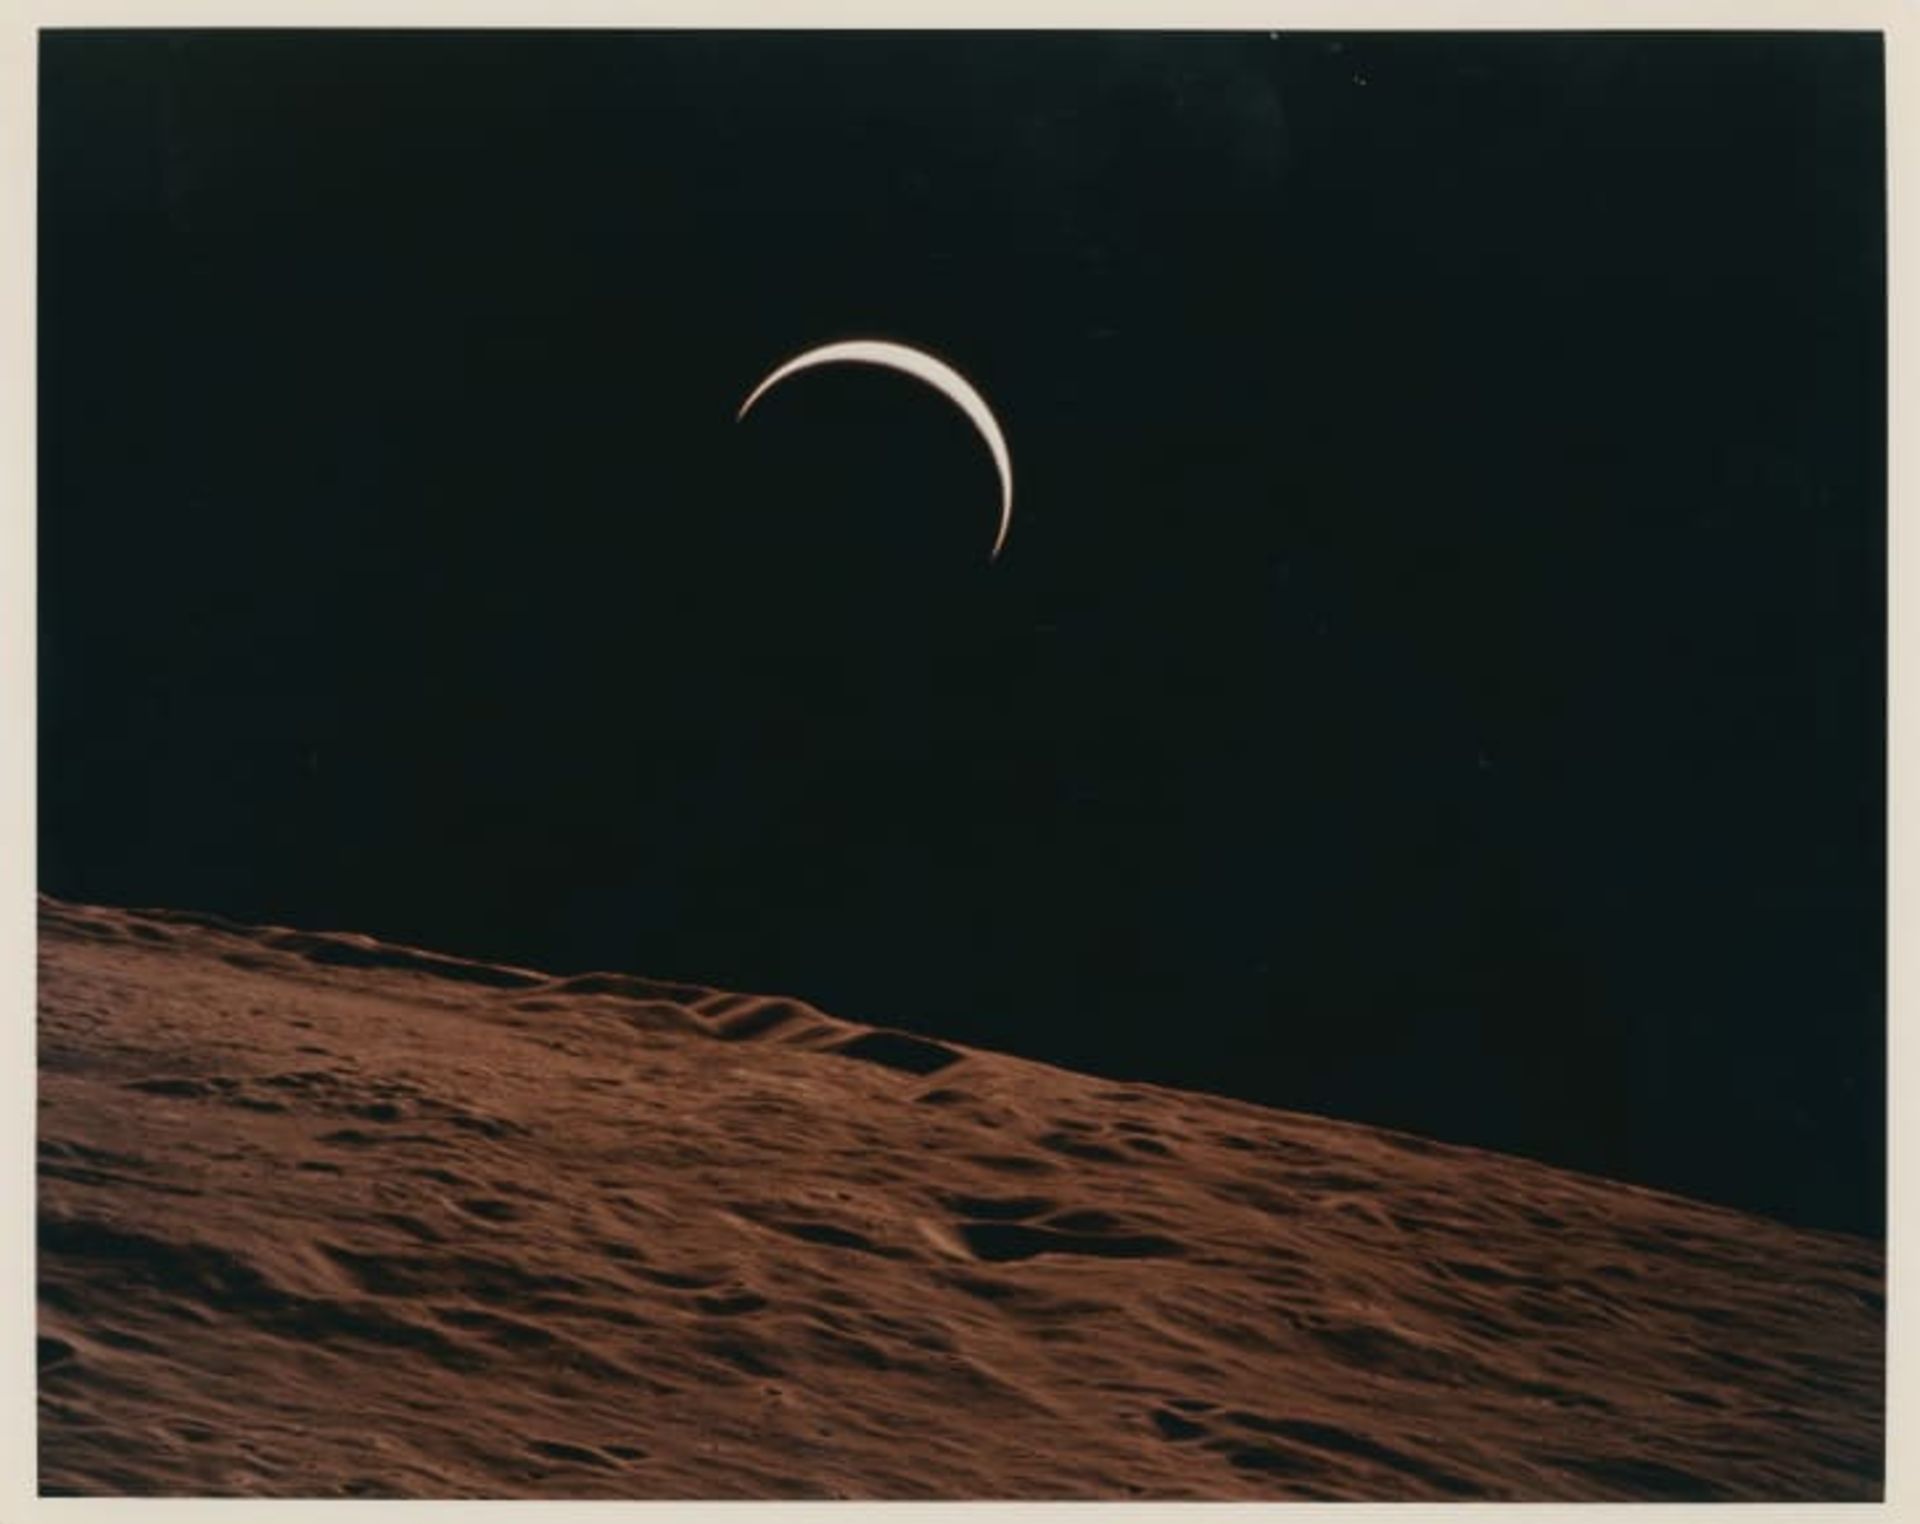 هلال زمین در حال بالا آمدن در افق ماه، عکس در سال ۱۹۷۱ گرفته شده است